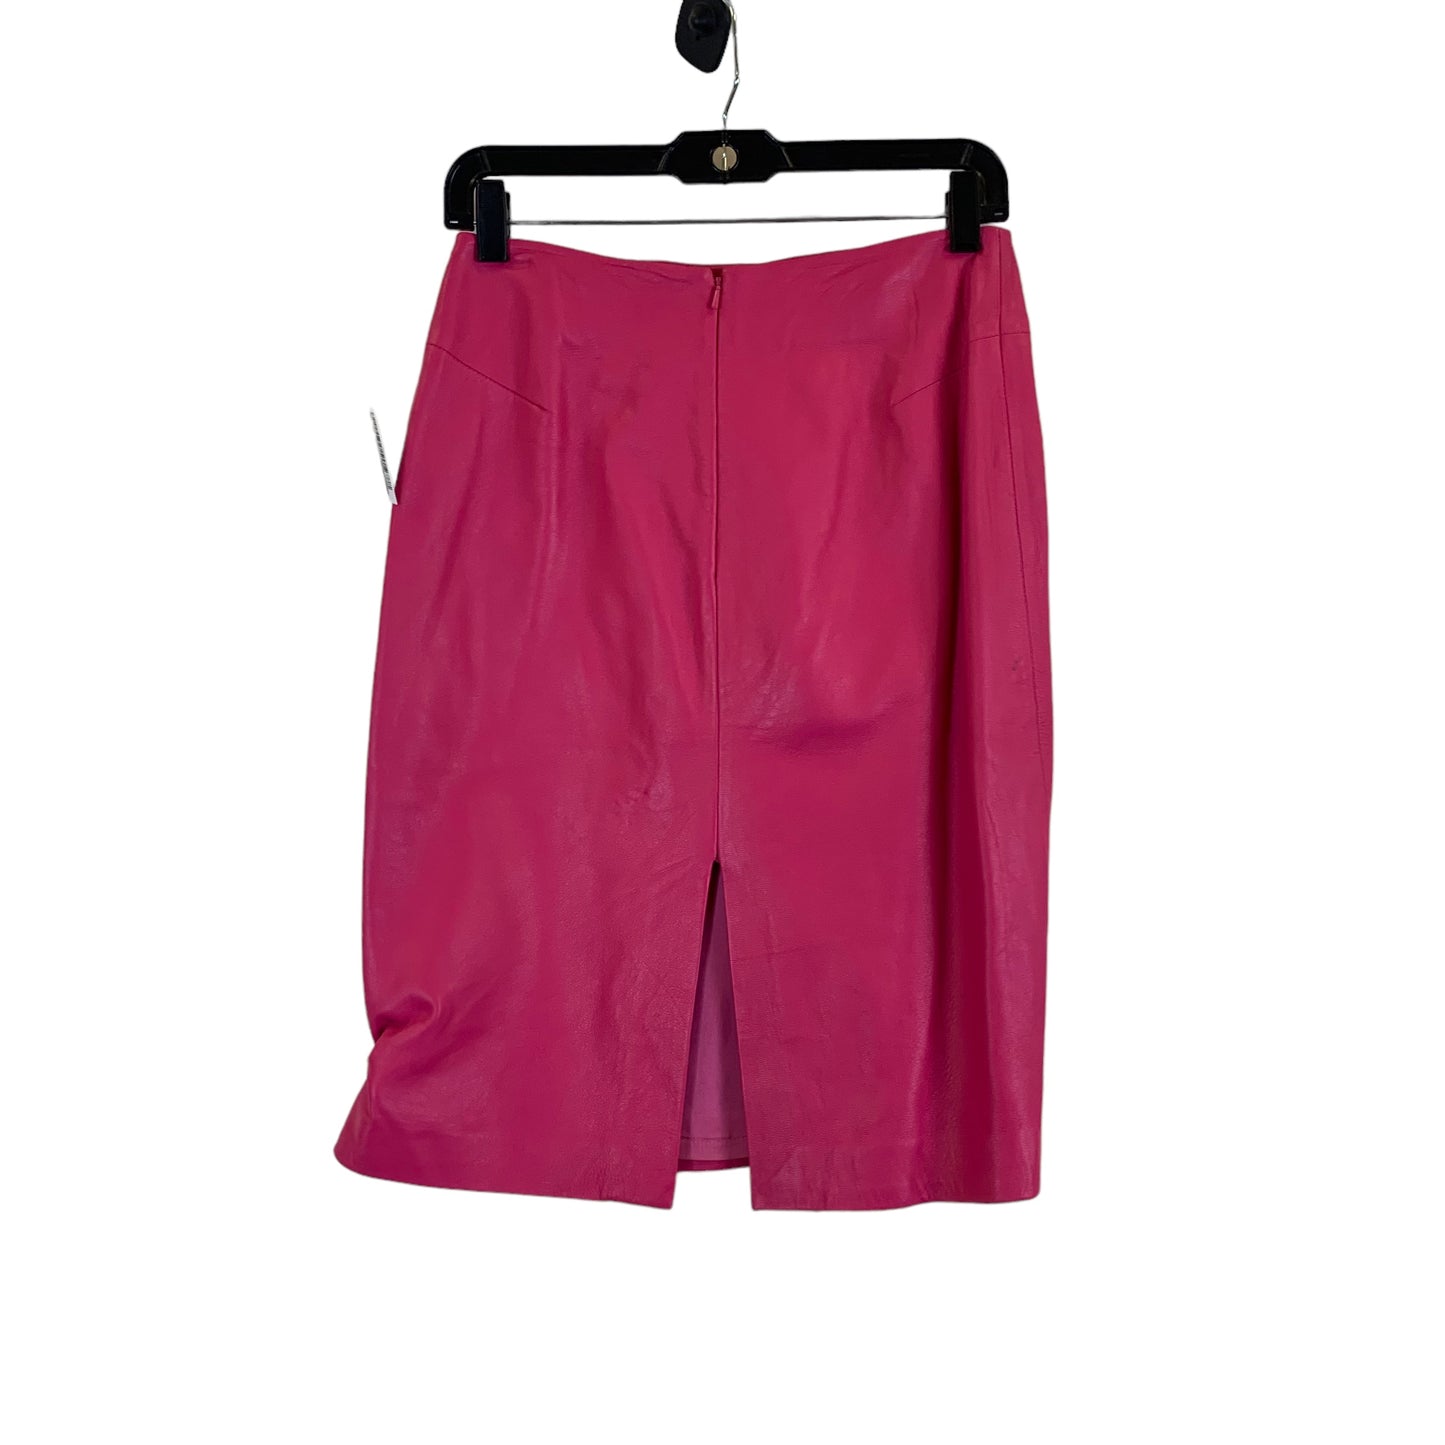 Skirt Mini & Short By Belle sport  Size: S